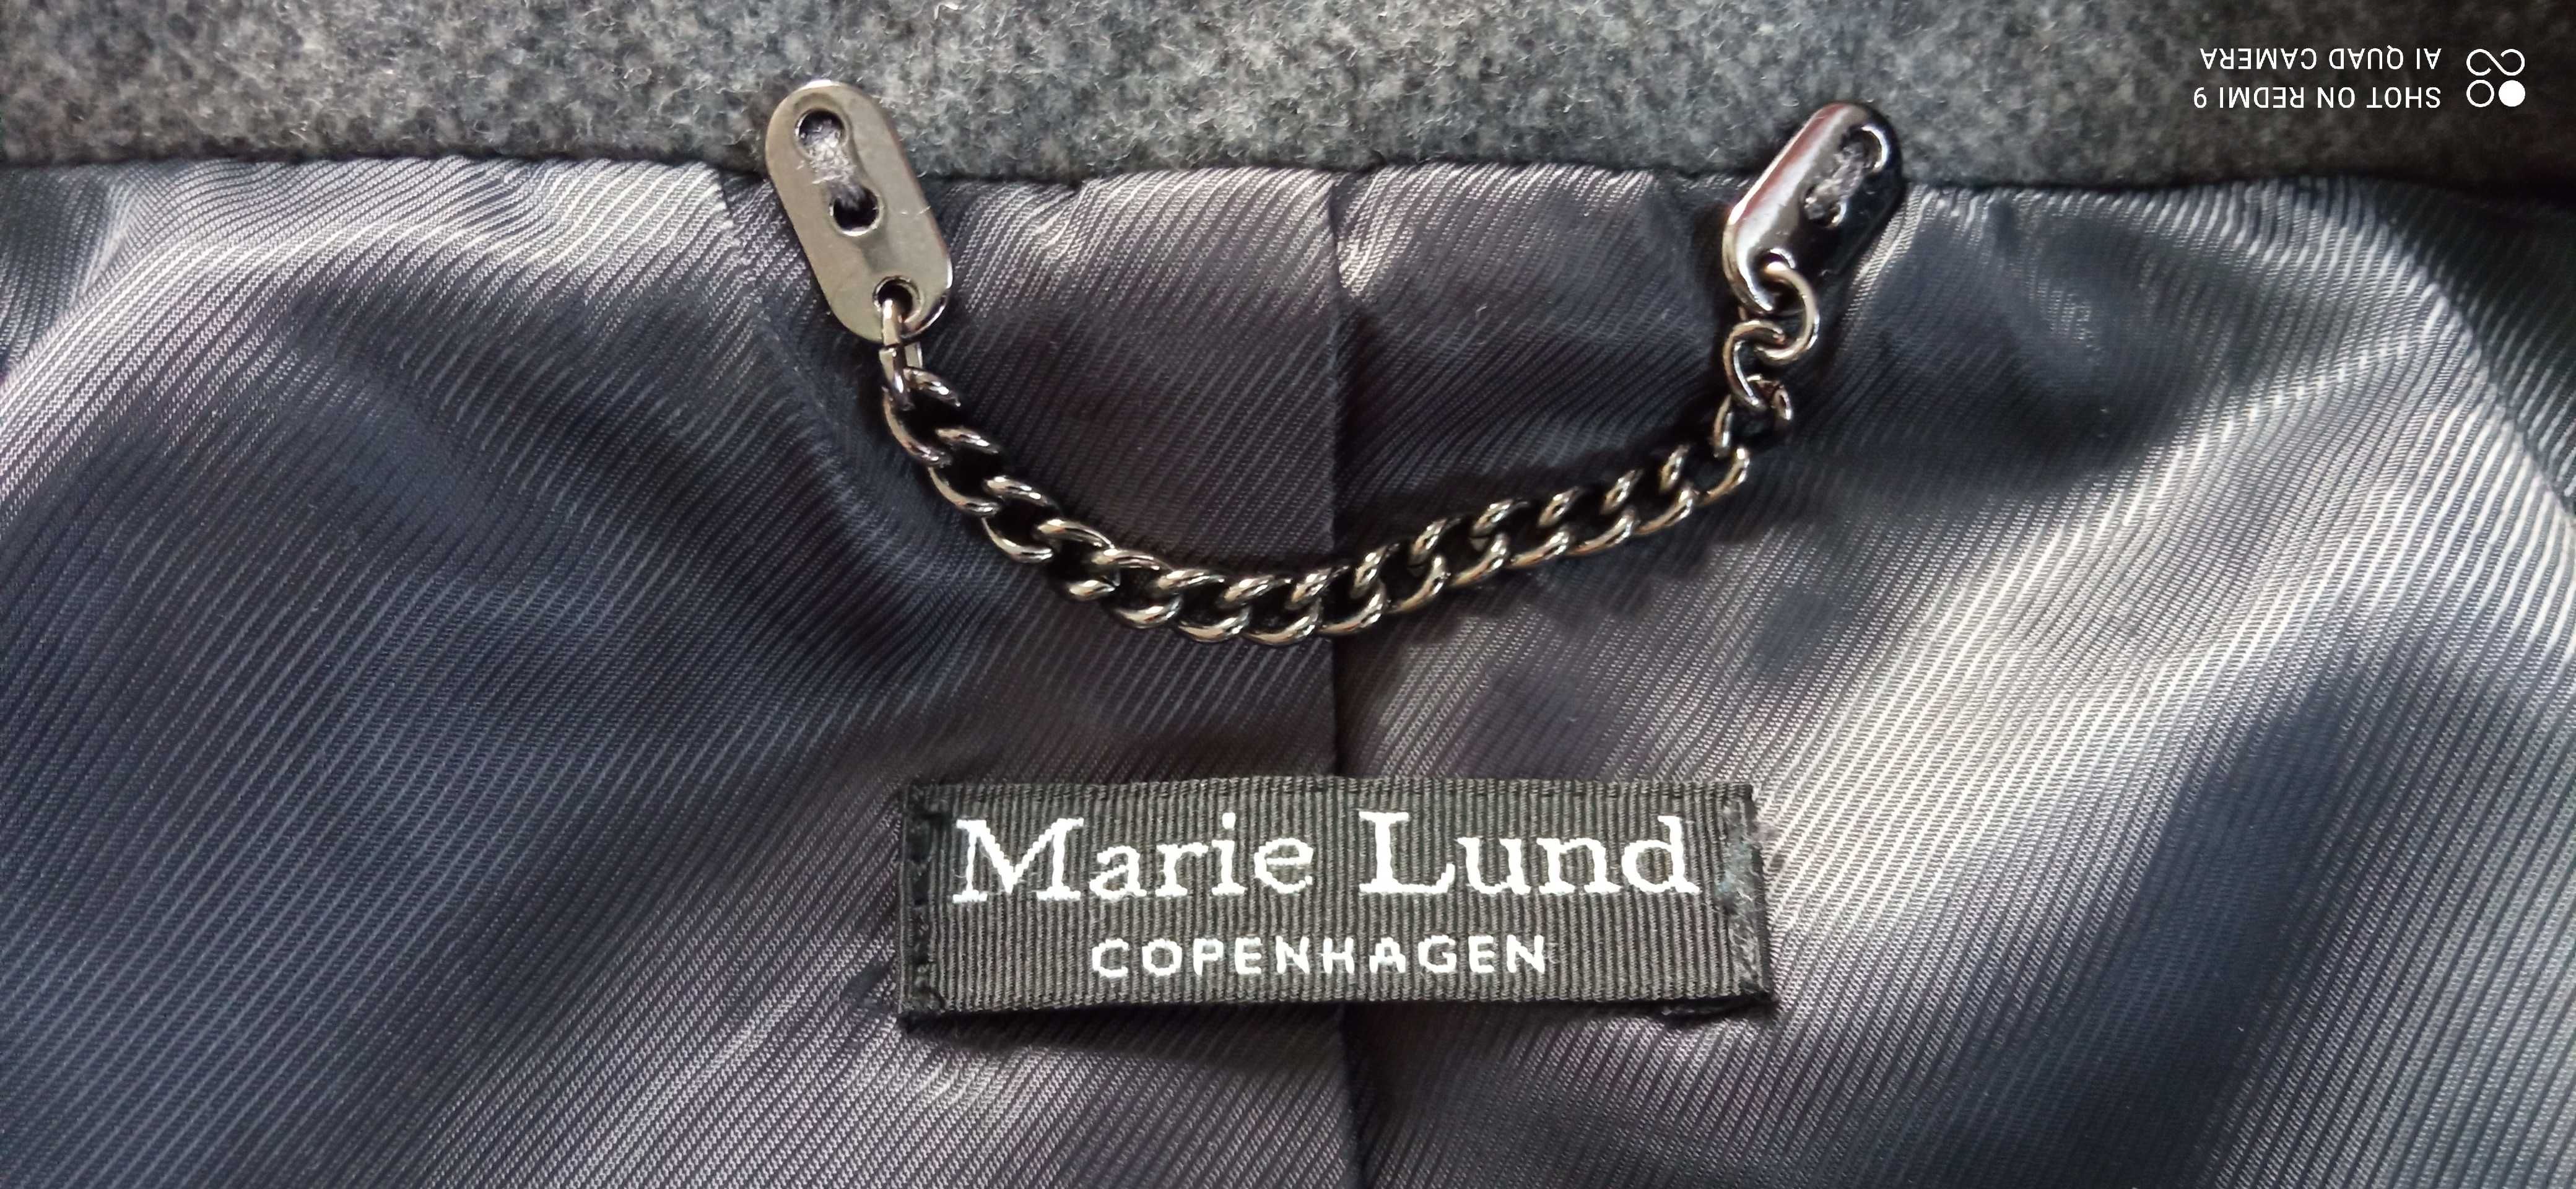 Wełniany płaszcz Marie Lund